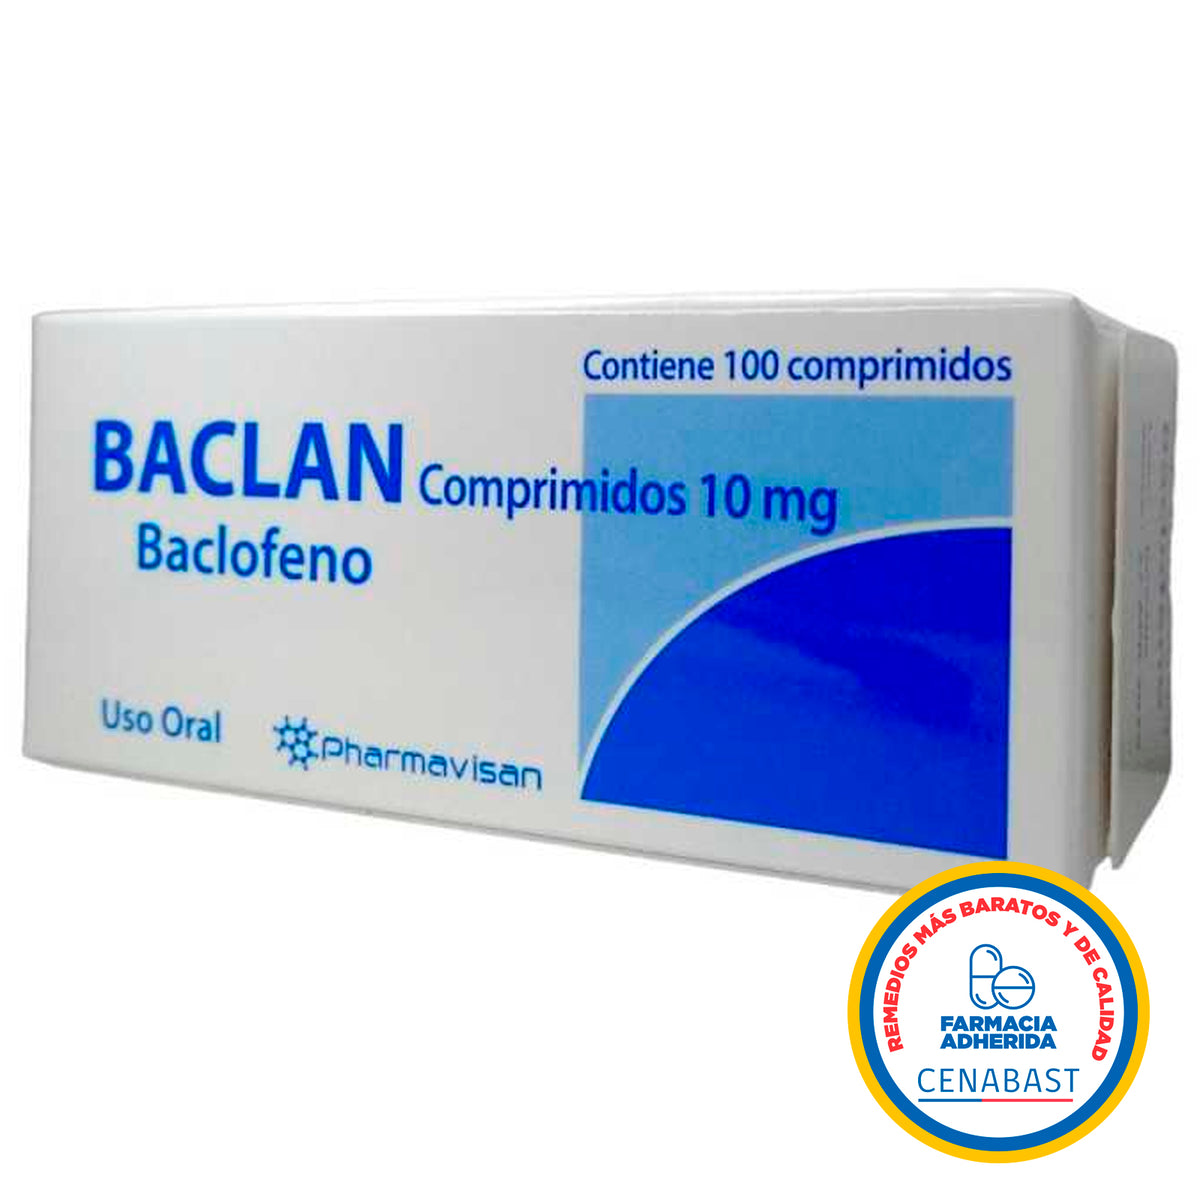 Baclan Comprimidos Producto Cenabast